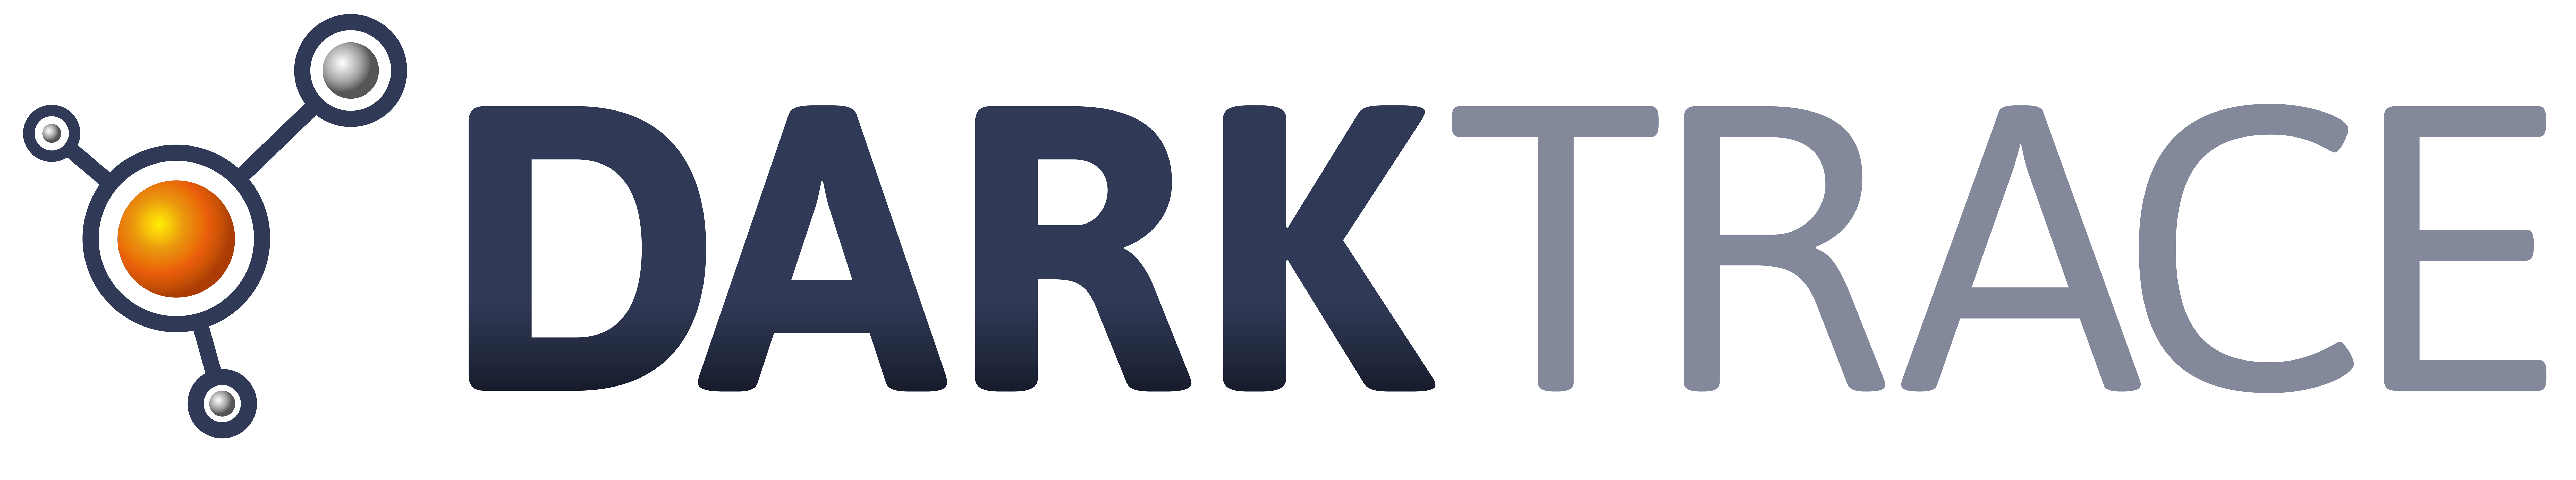 Darktrace Logo-White